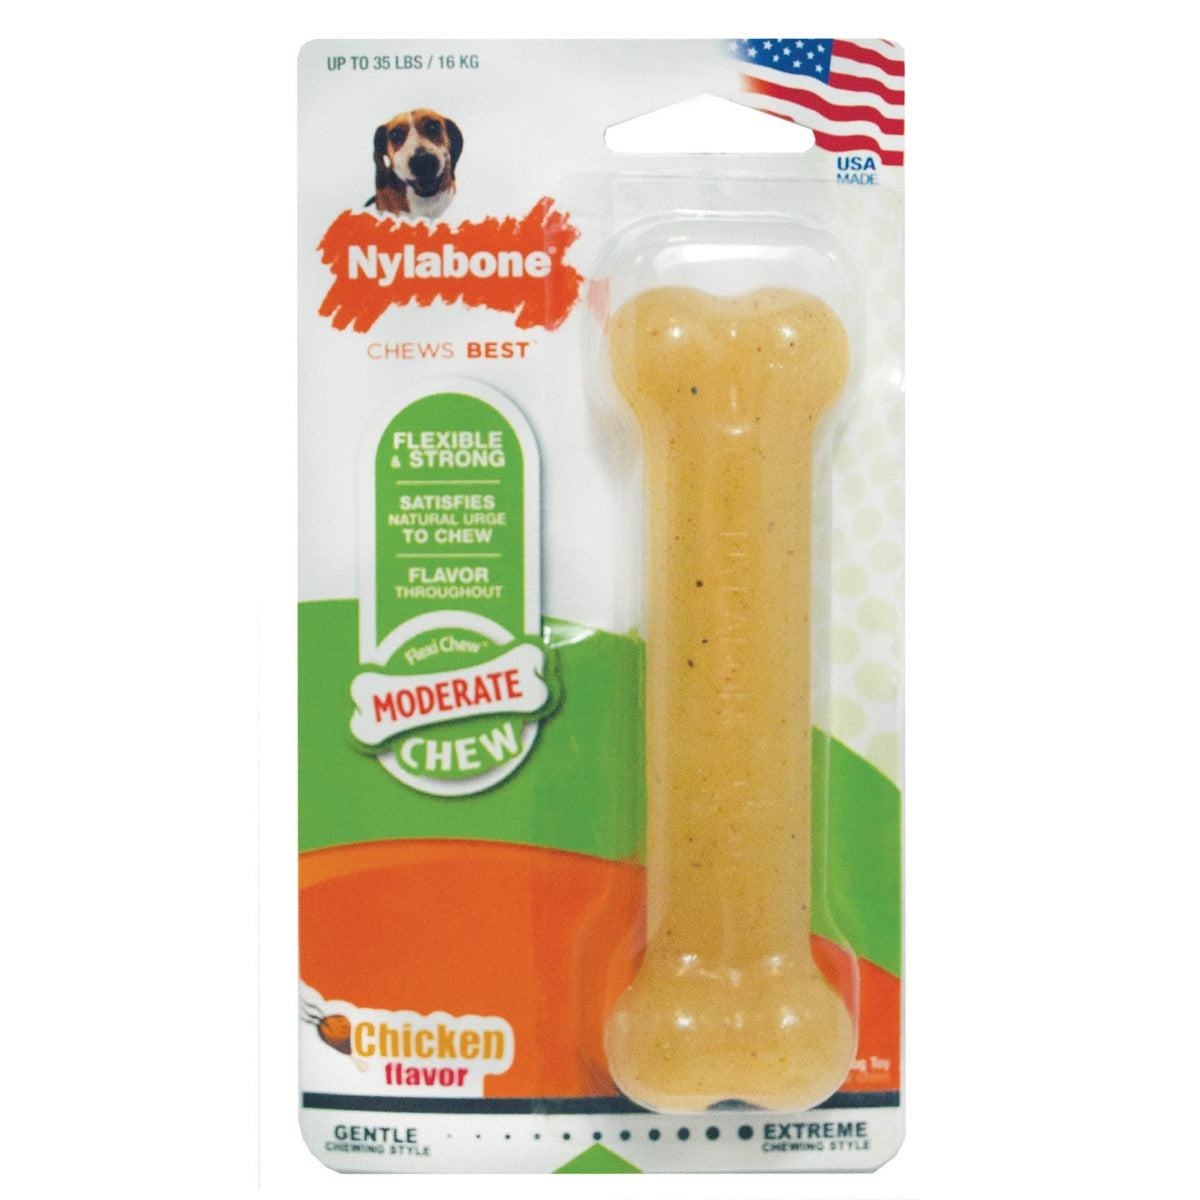 Nylabone Moderate Chew Dog Chew Toy - Chicken Flavor